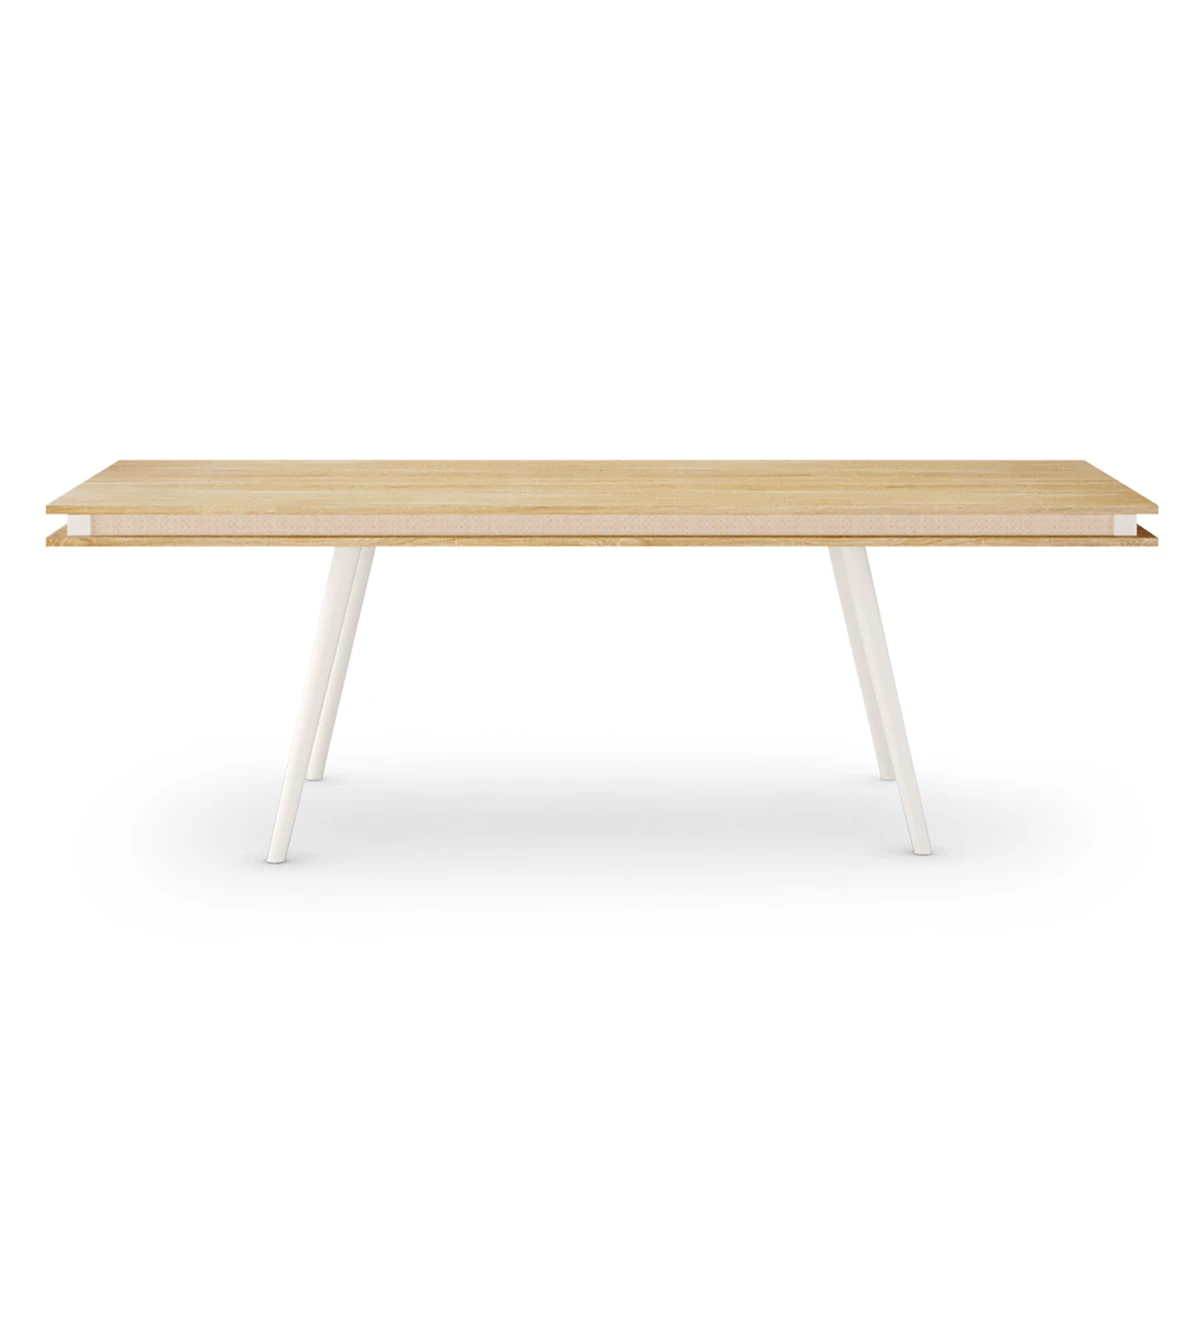 Mesa de comedor rectangular Malmo 240 x 100 cm, tapa en roble natural, pies lacados perla.